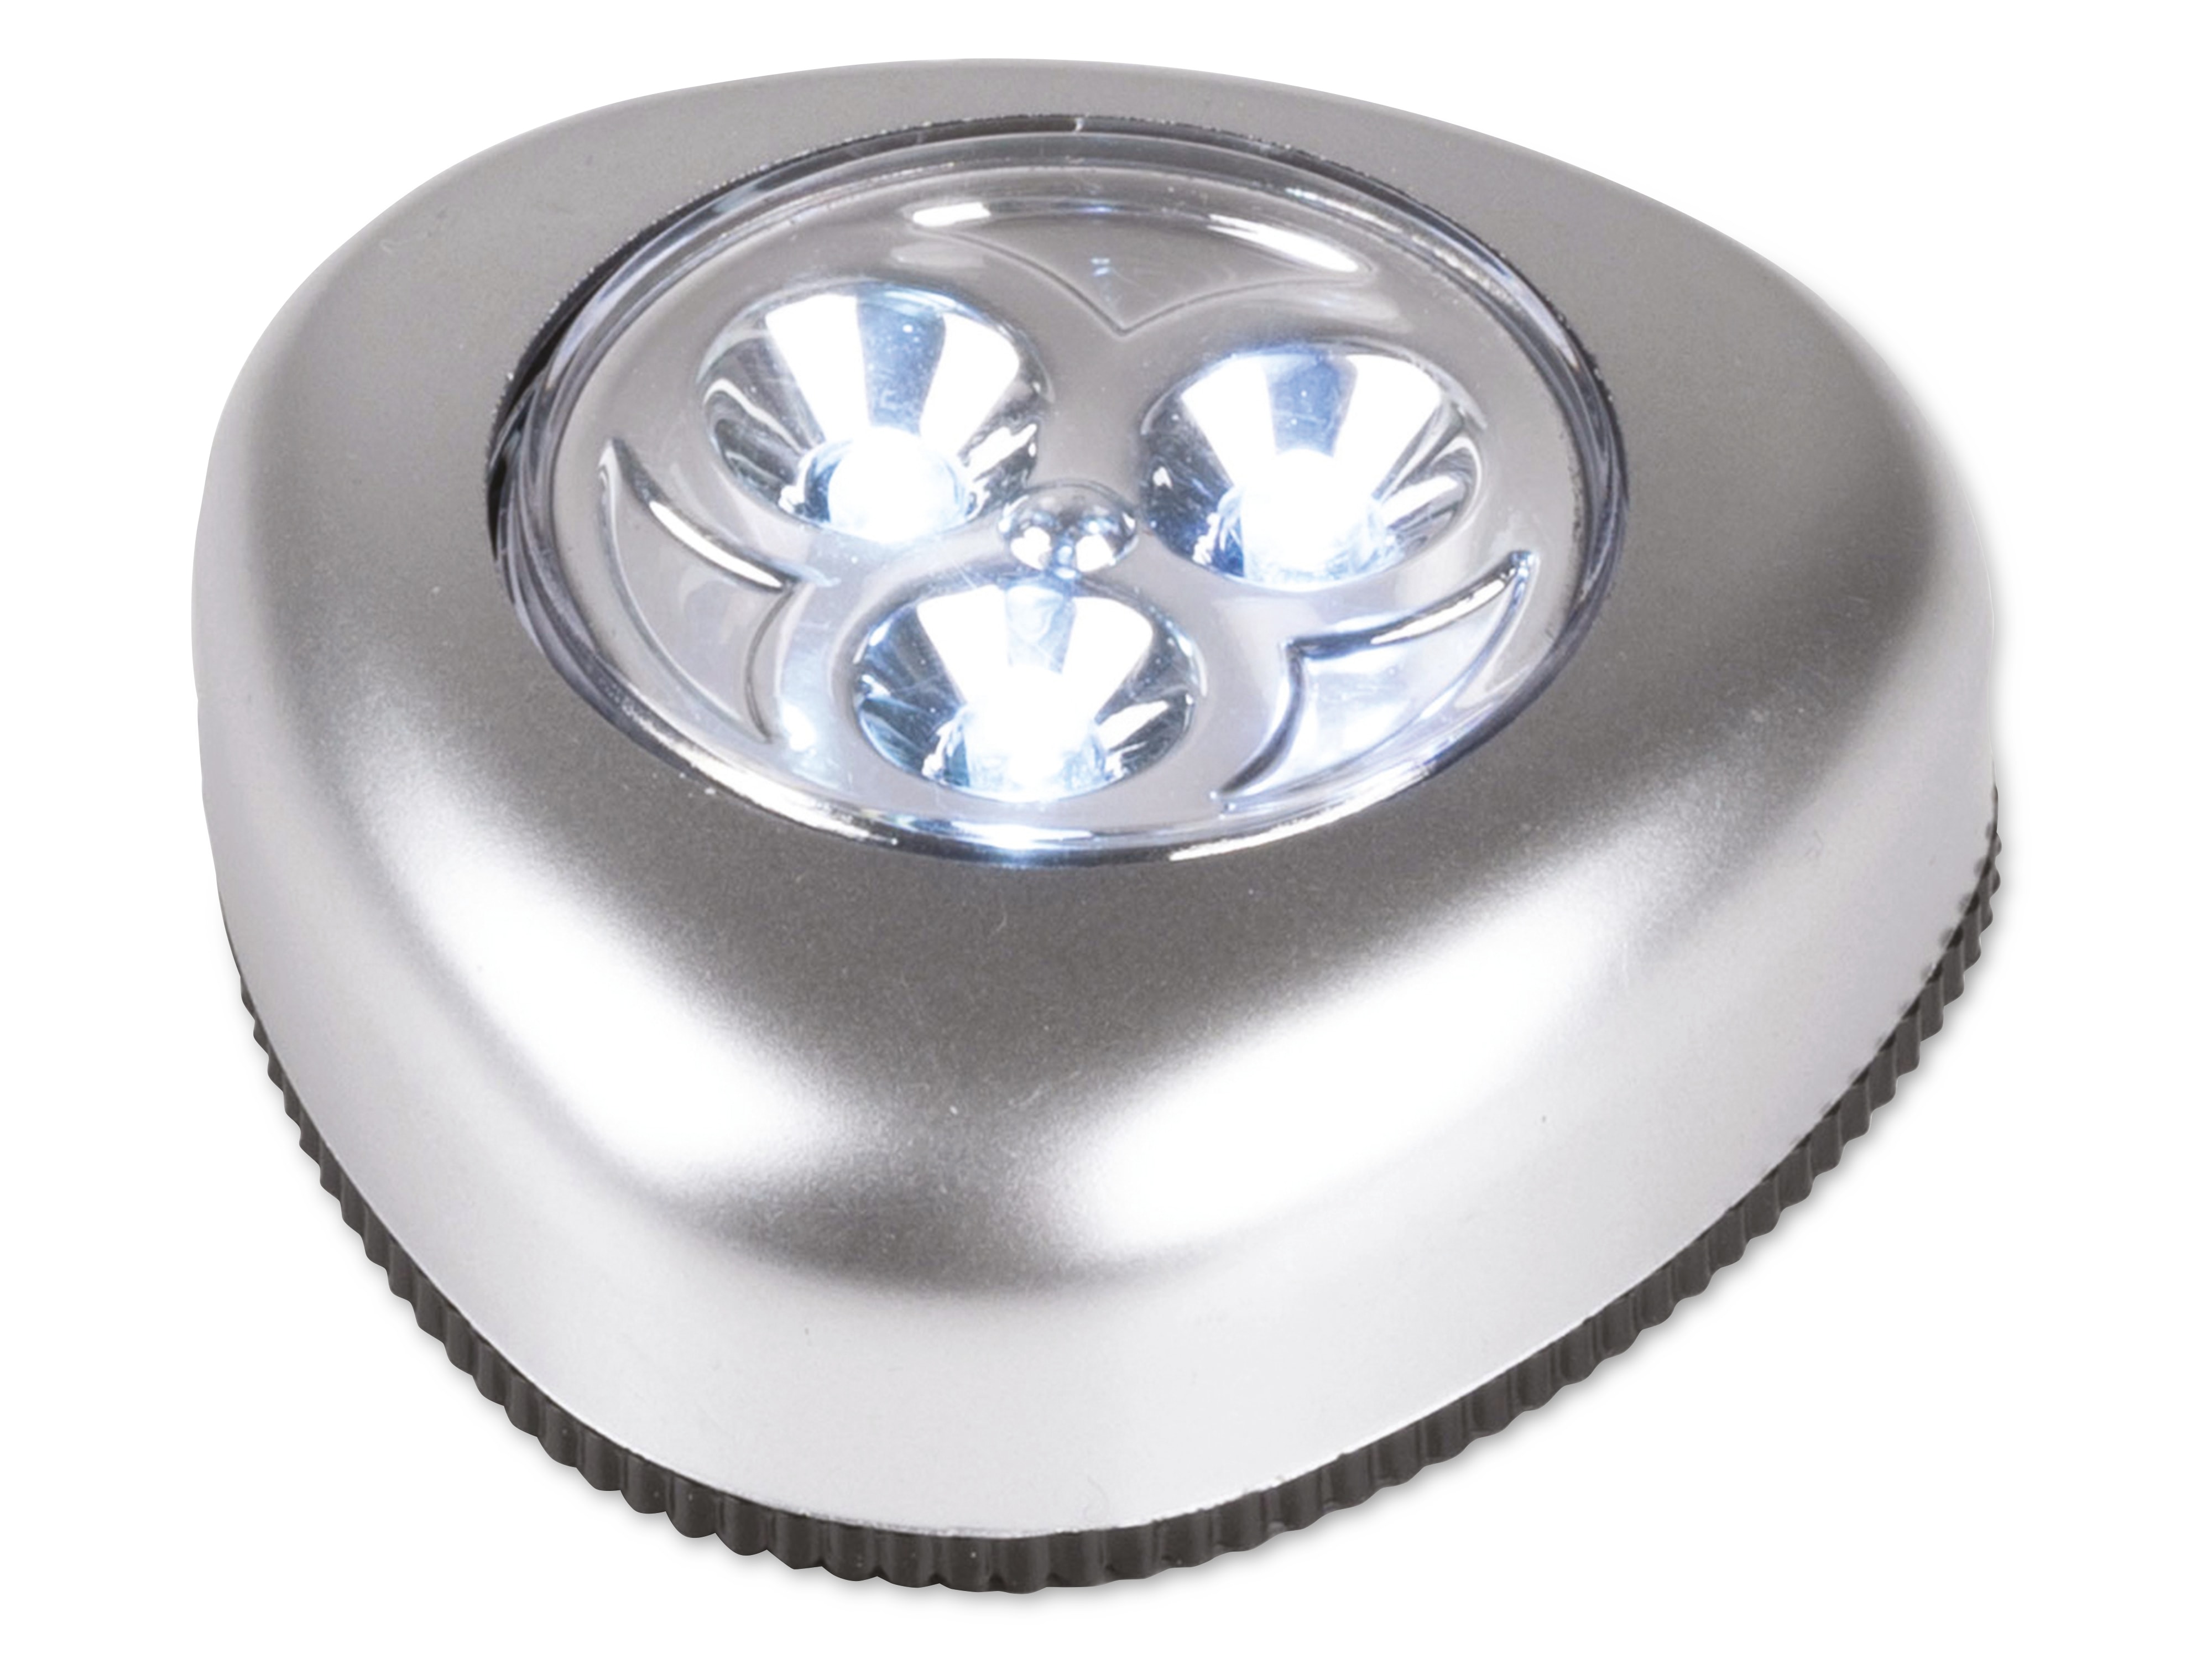 GRUNDIG LED-Schranklicht 5 Stück, 3 LEDs, batteriebetrieben